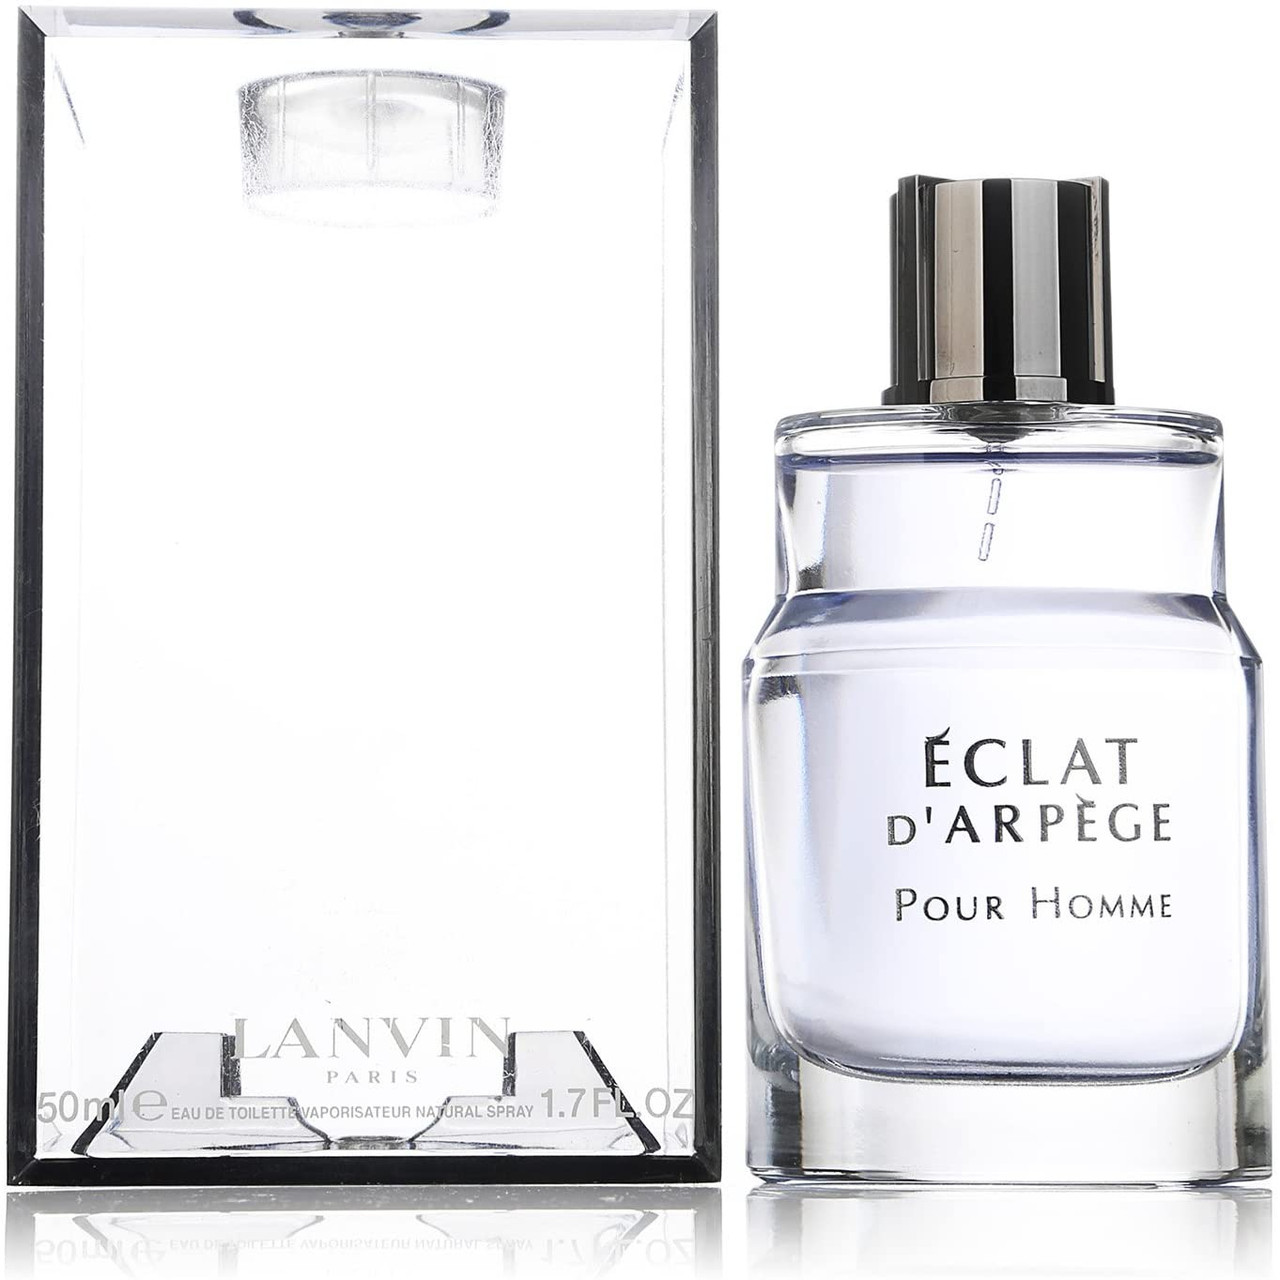 Lanvin - Eclat D'Arpege Pour Homme Fragrance 